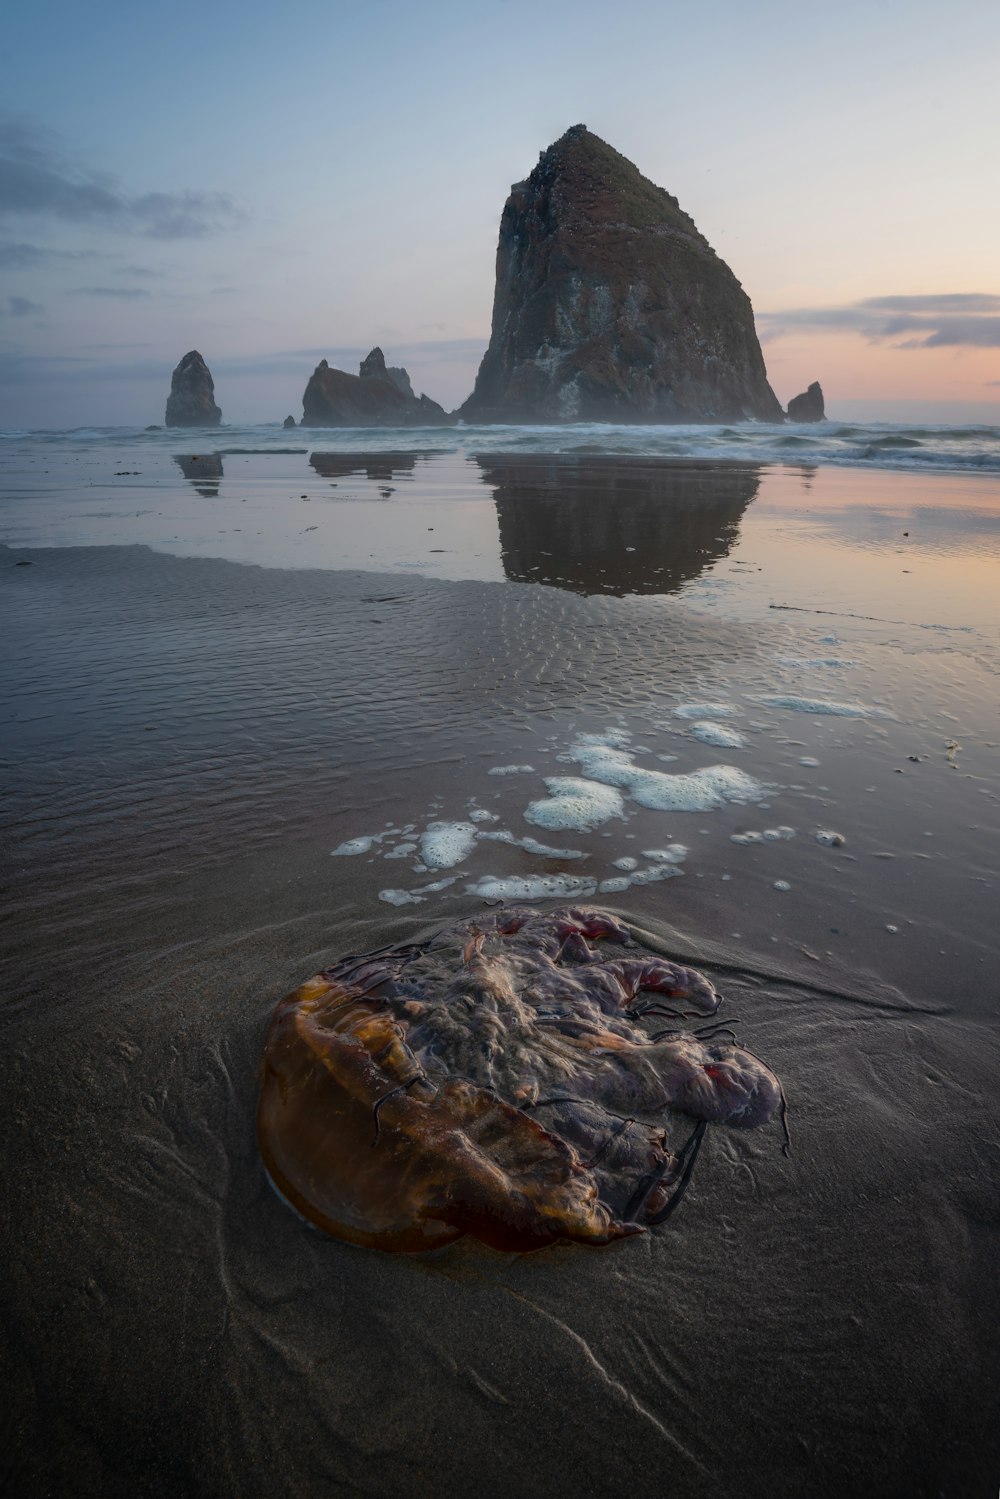 Eine Qualle am Strand angespült mit einem Felsen im Hintergrund